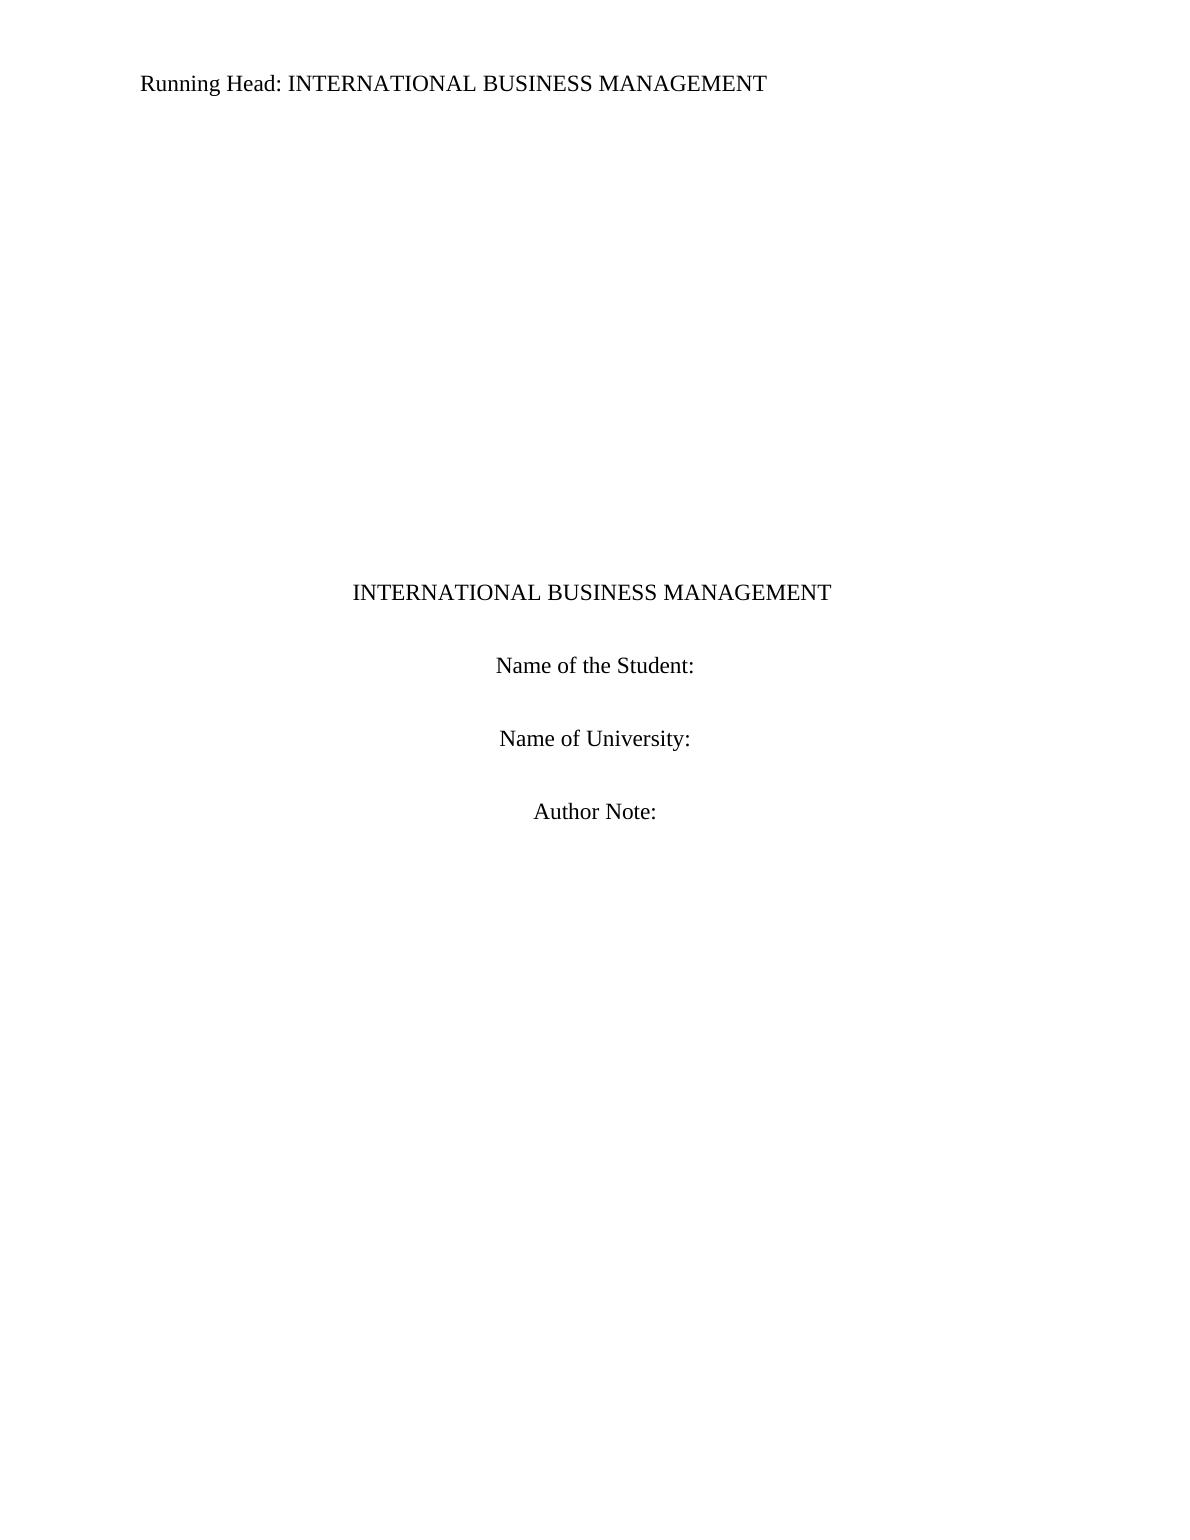 international business management assignment